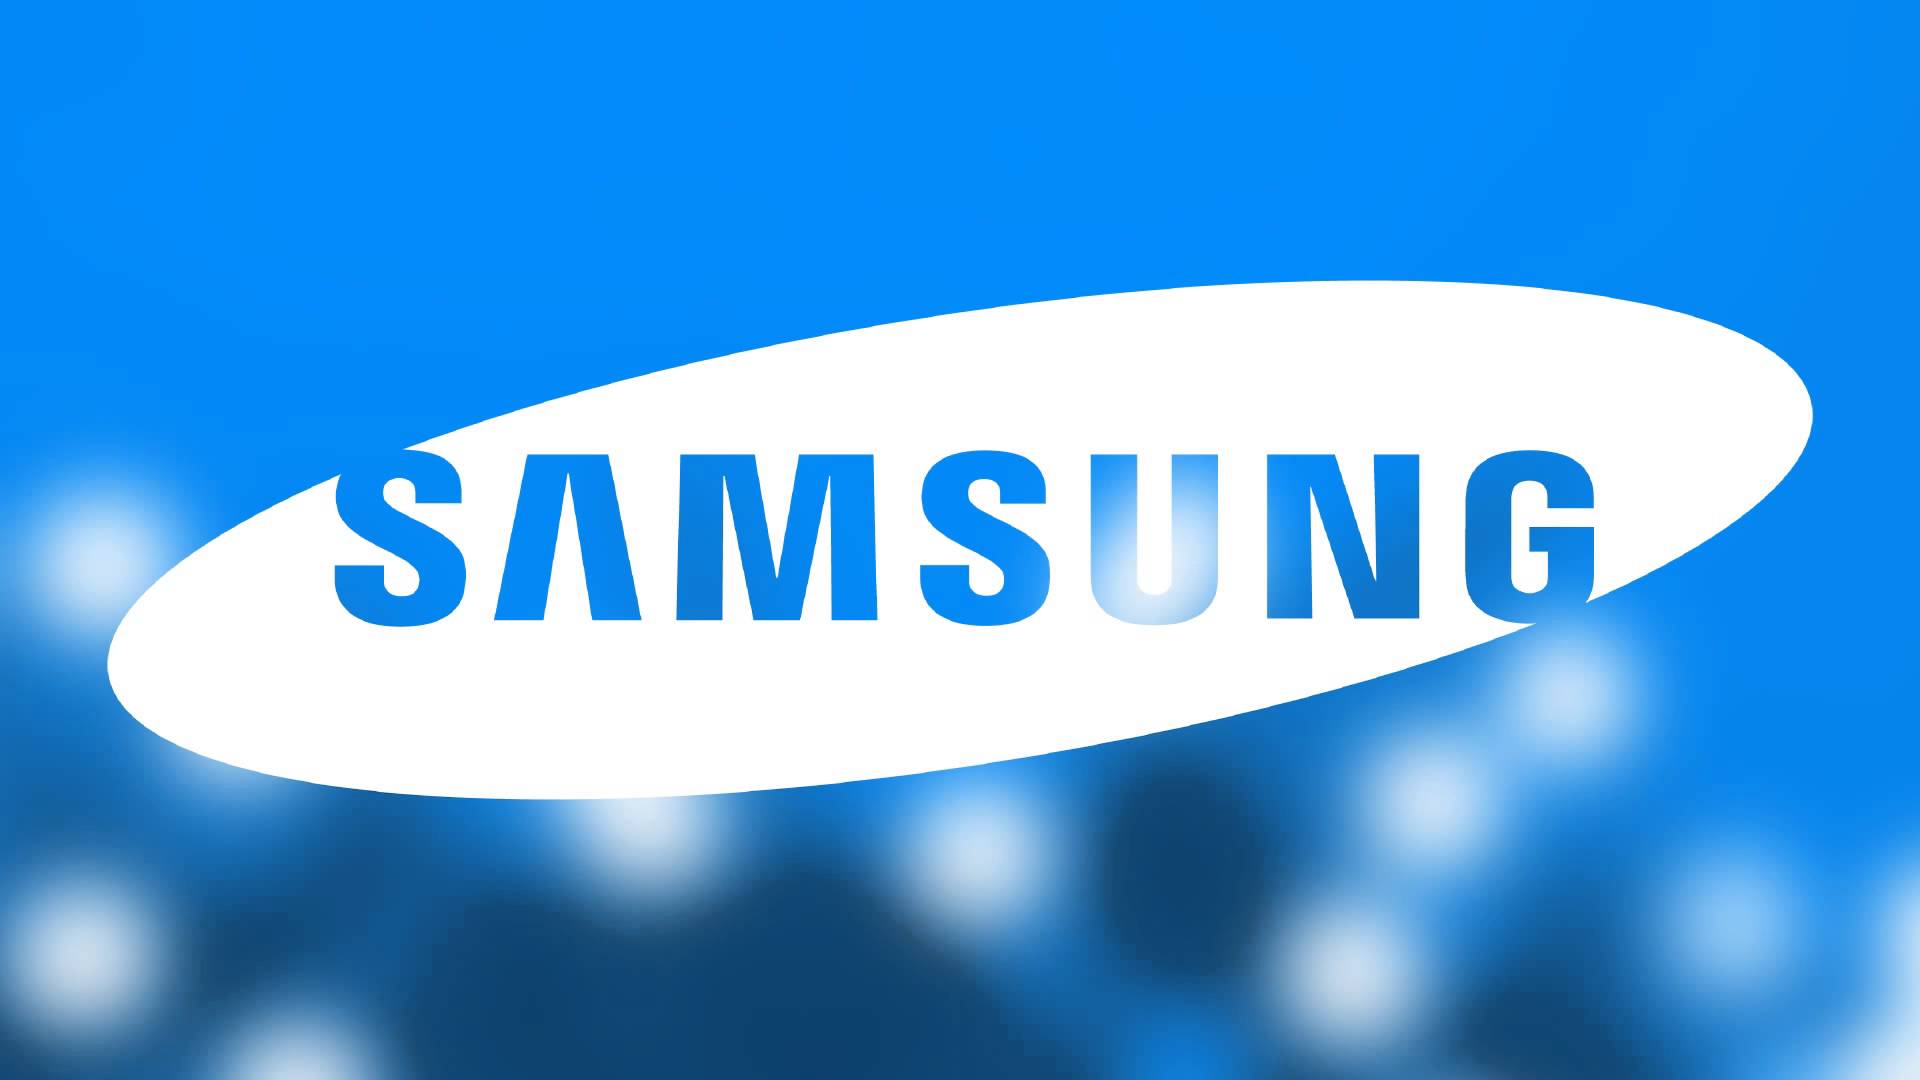  Samsung a déposé un nouveau brevet consacré à une technologie de charge sans fil à distance